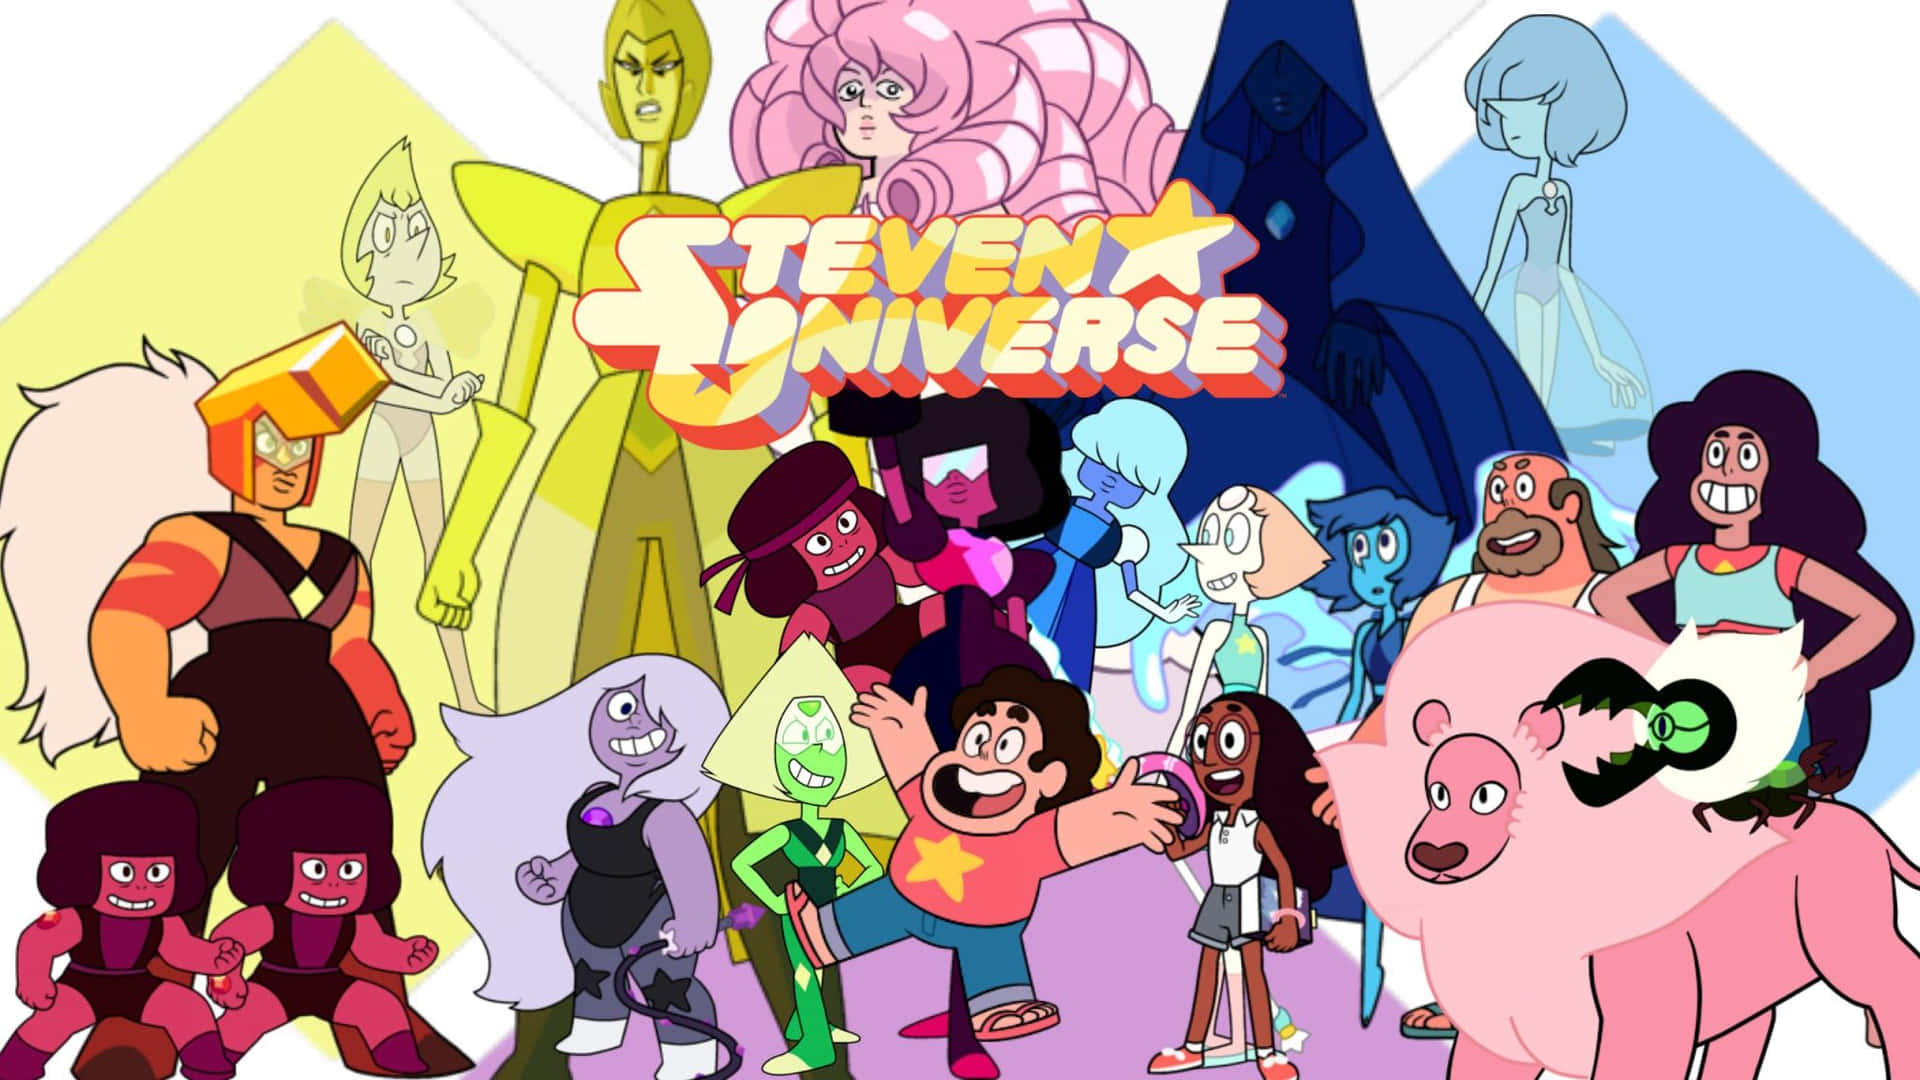 Sériede Tv Personagens Steven Universe Para Plano De Fundo De Computador Ou Celular. Papel de Parede